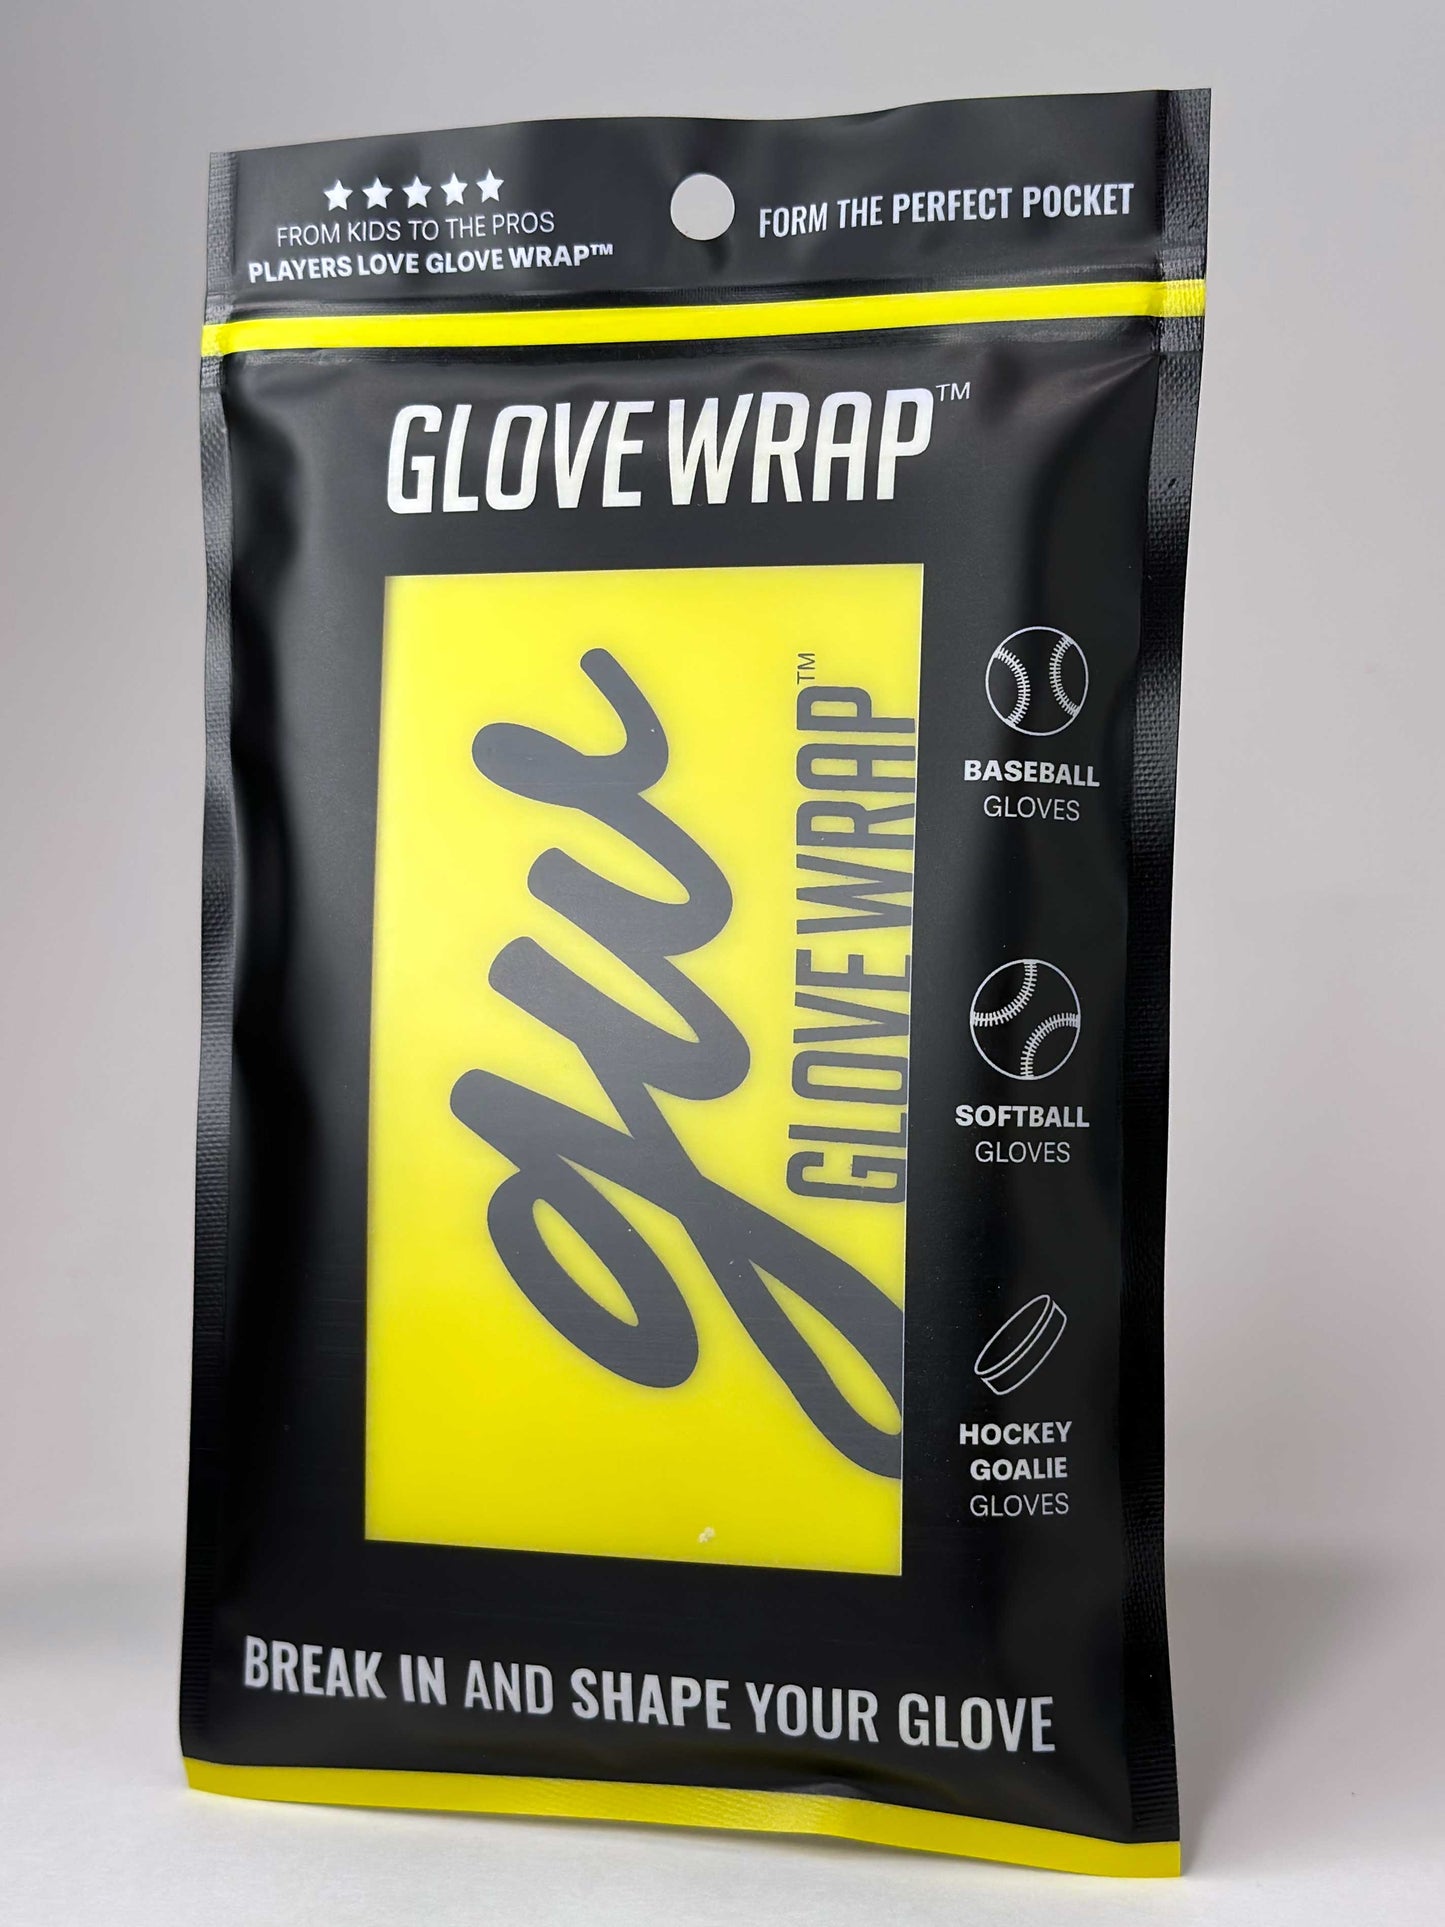 Glove Wrap™